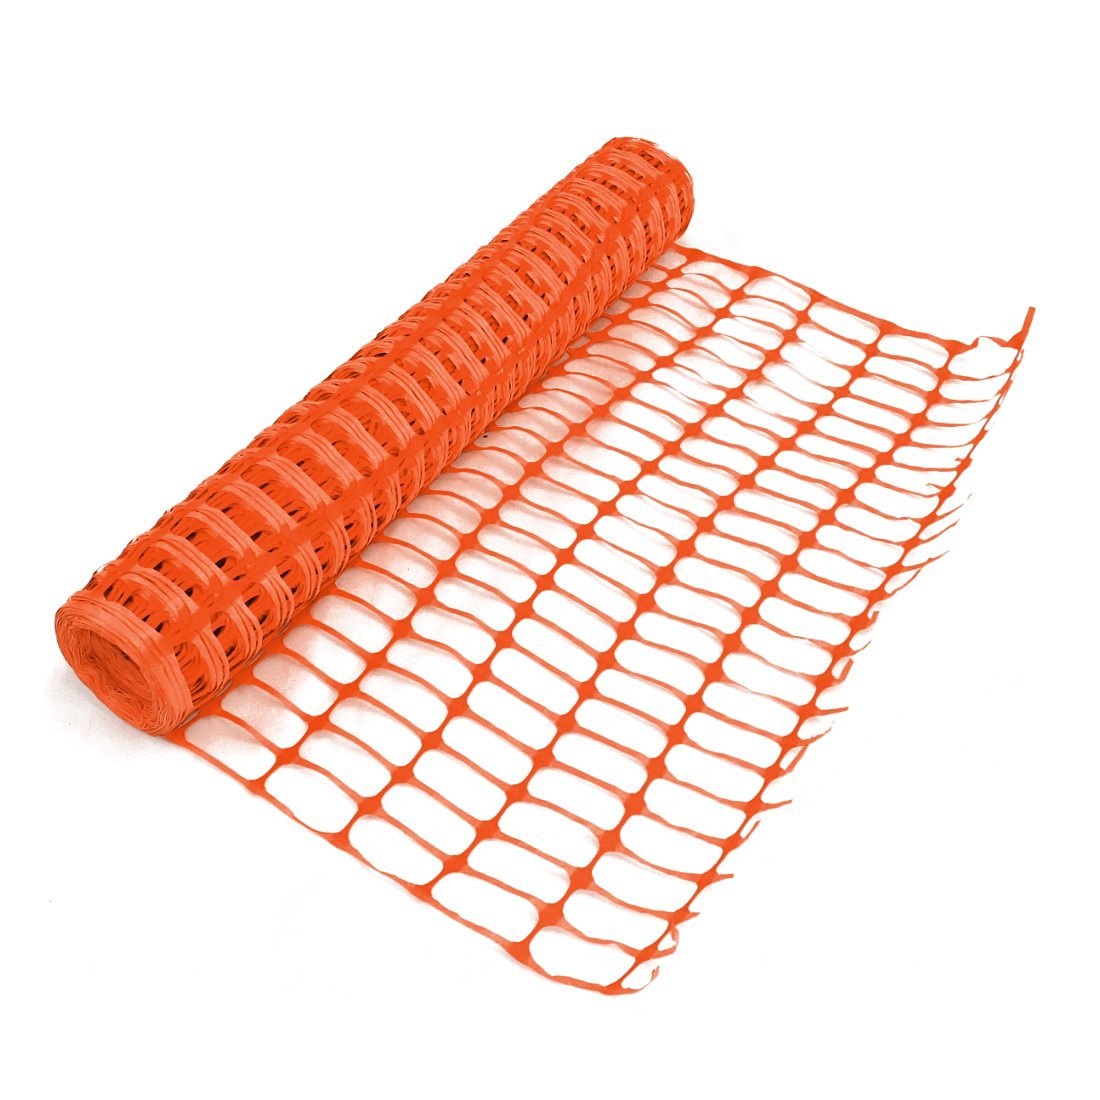 Heavy Duty Orange Safety Barrier Mesh Fencing 1mtr x 50mtr